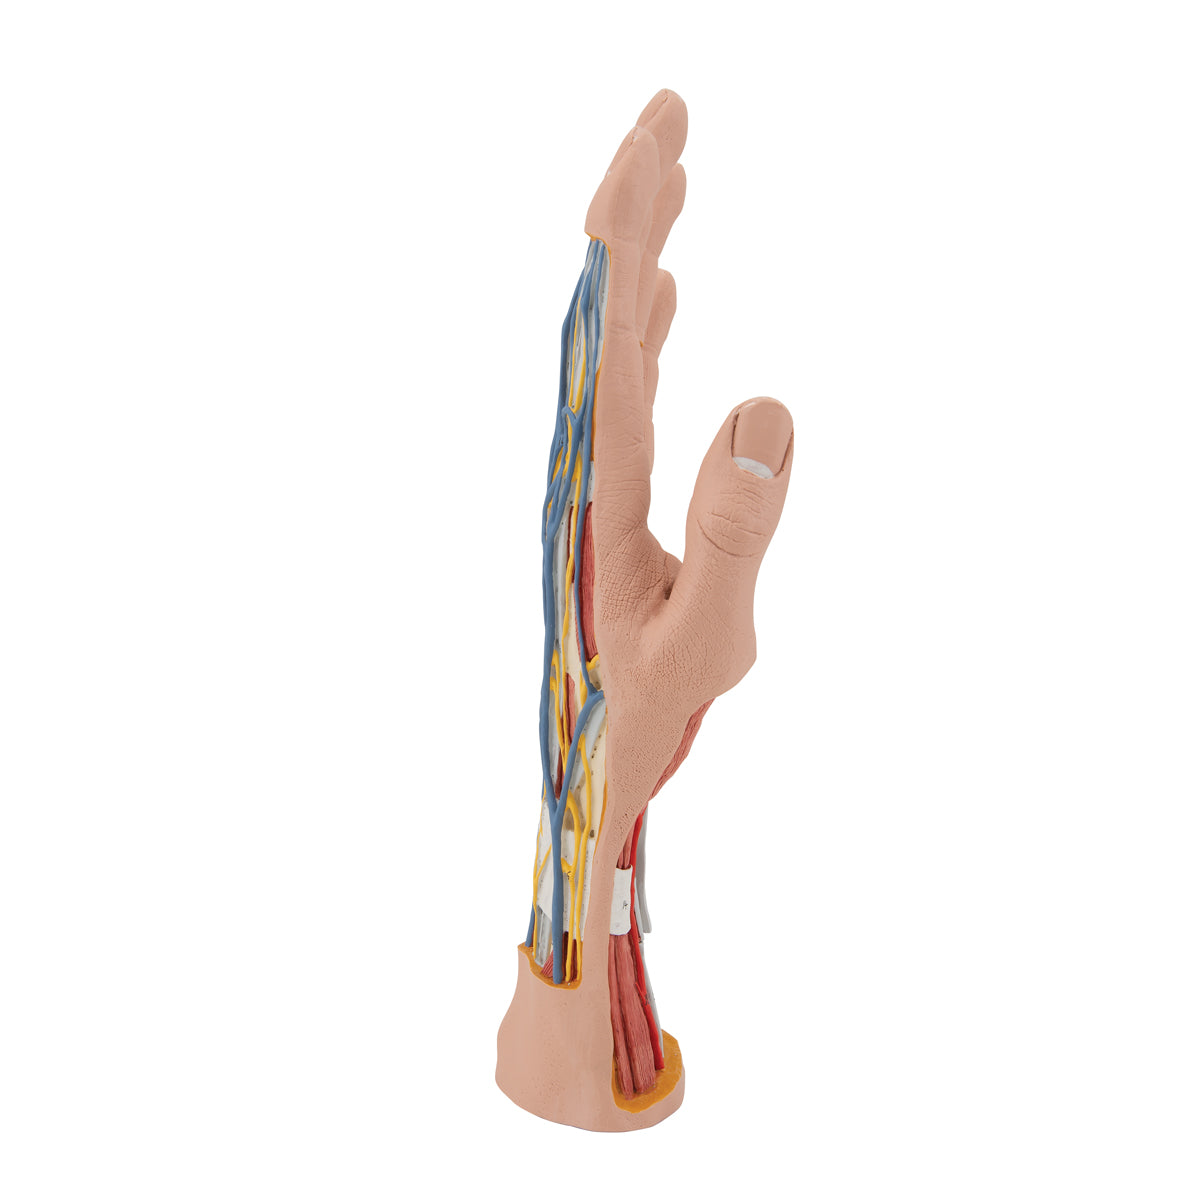 Komplet håndmodel med hud, muskler, sener, kar og nerver - kan adskilles i 3 dele